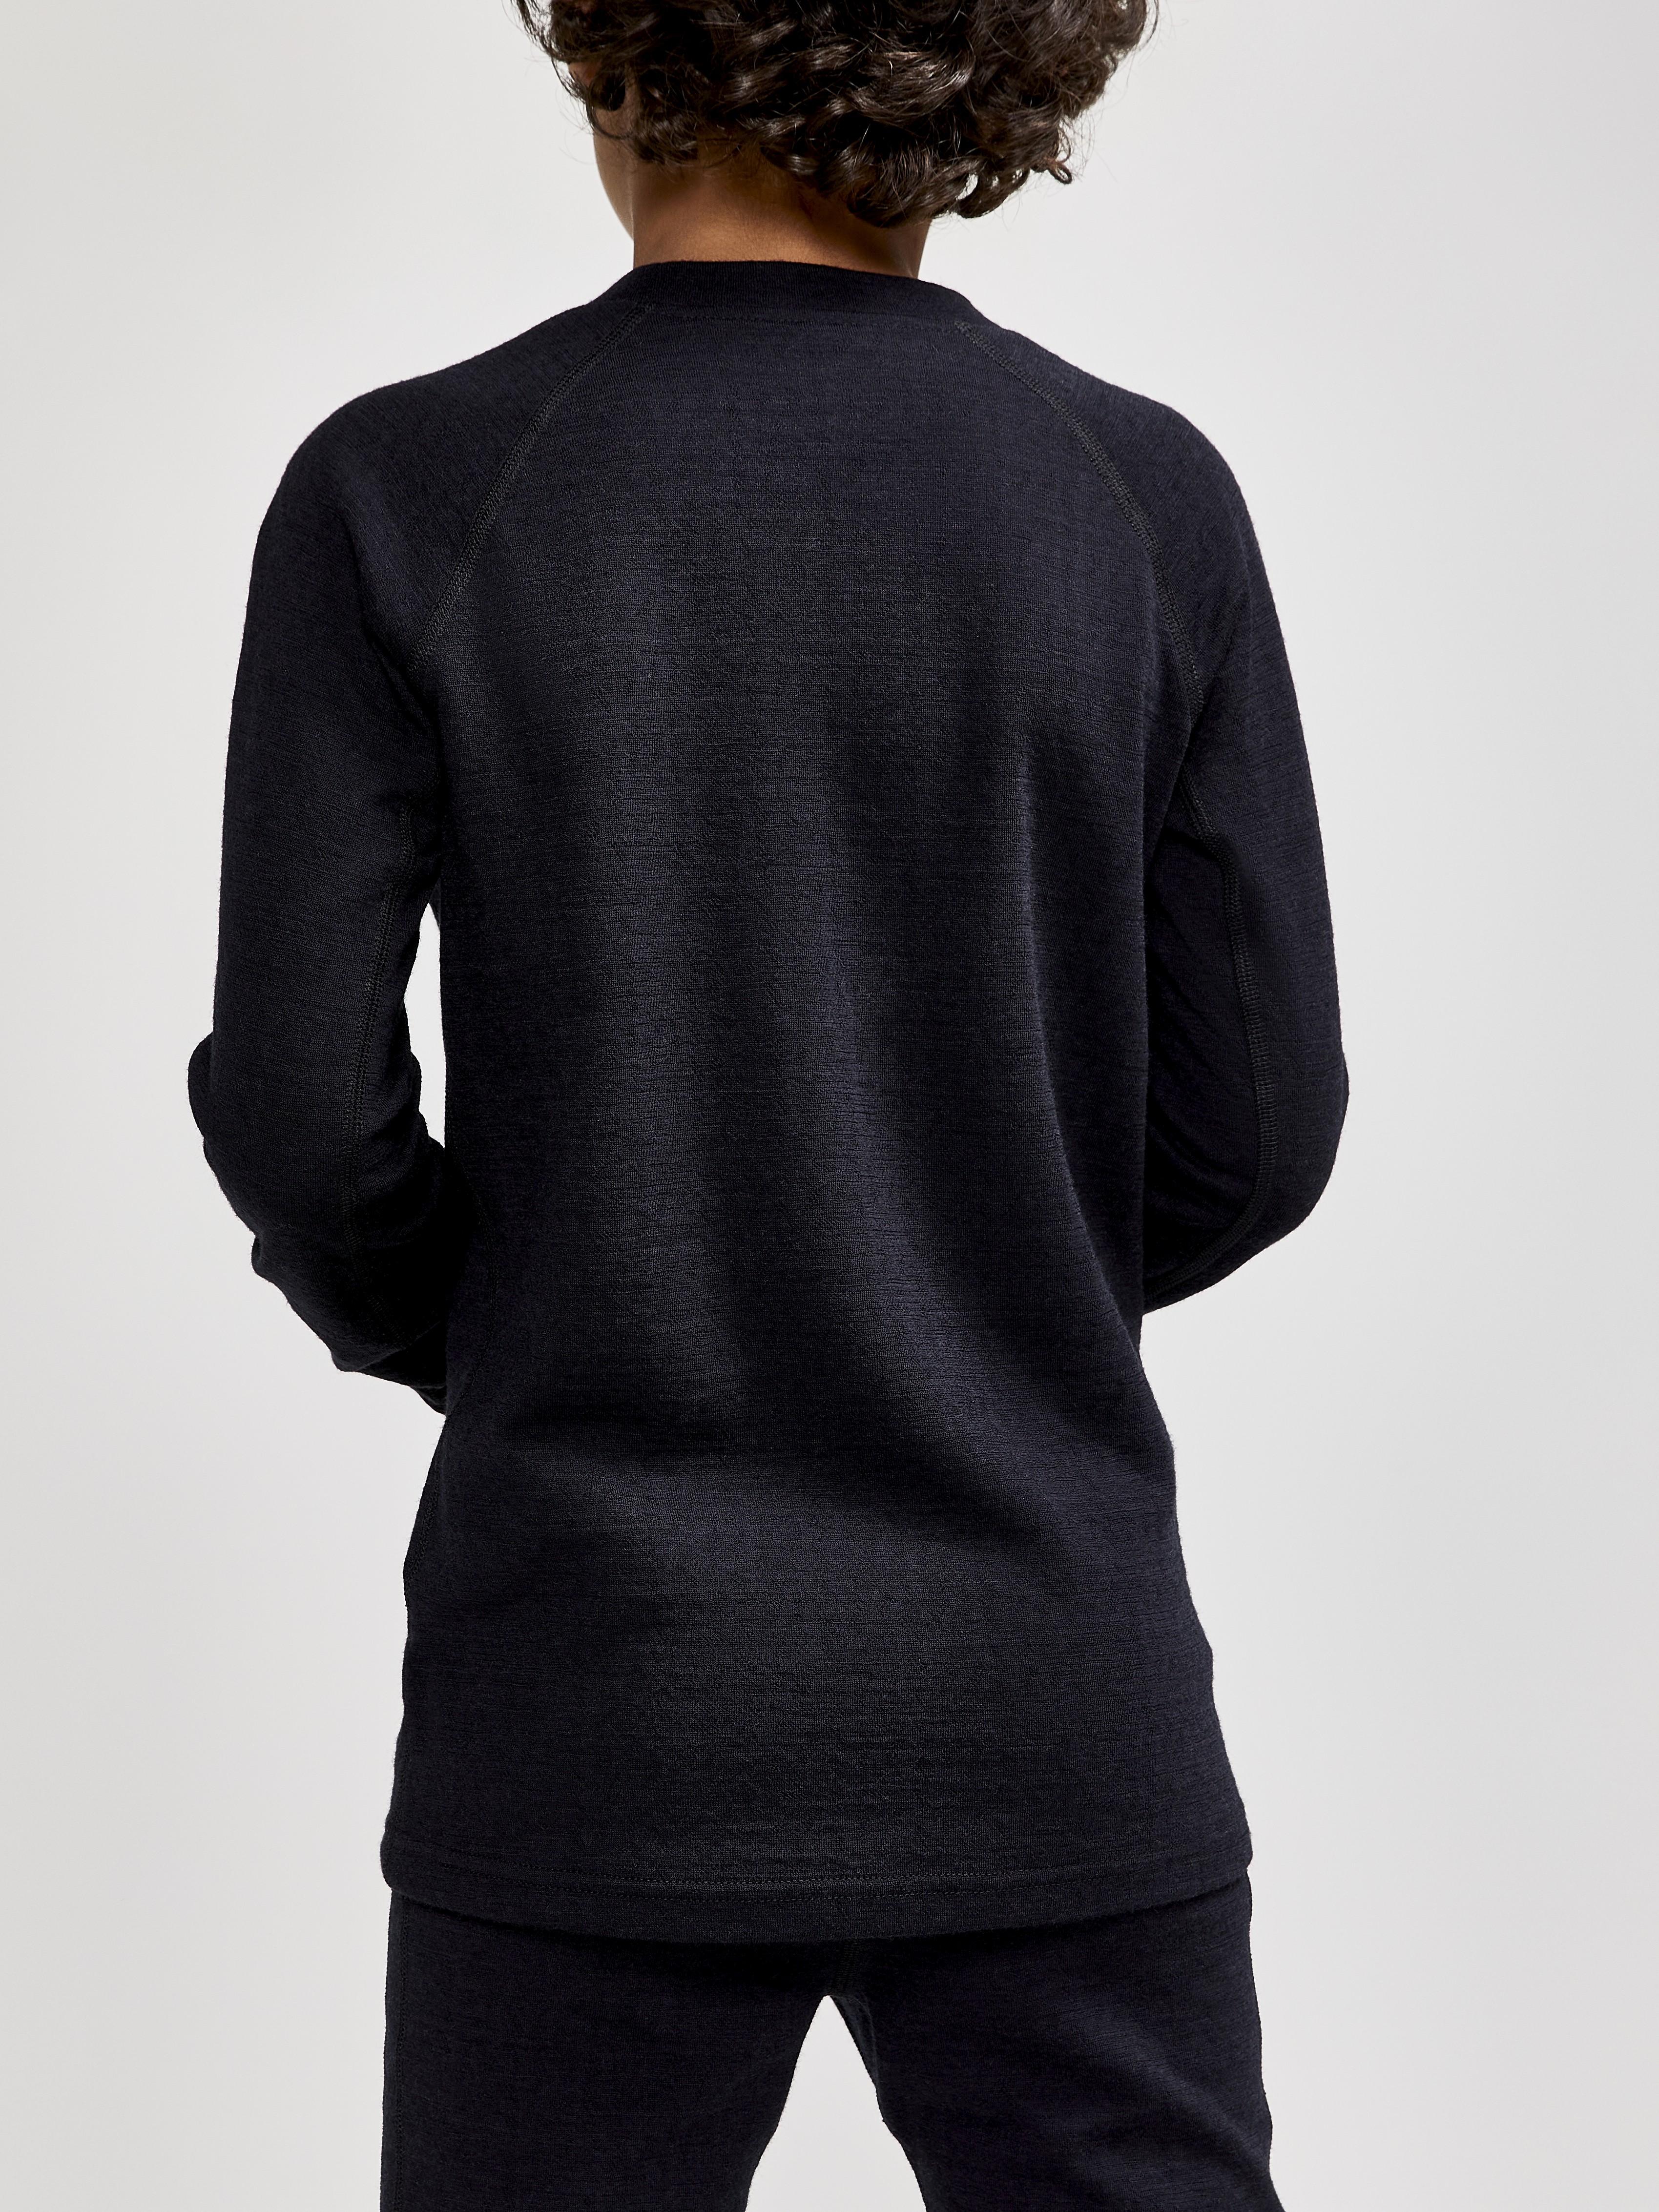 ADV Nordic Wool LS JR - Black | Craft Sportswear